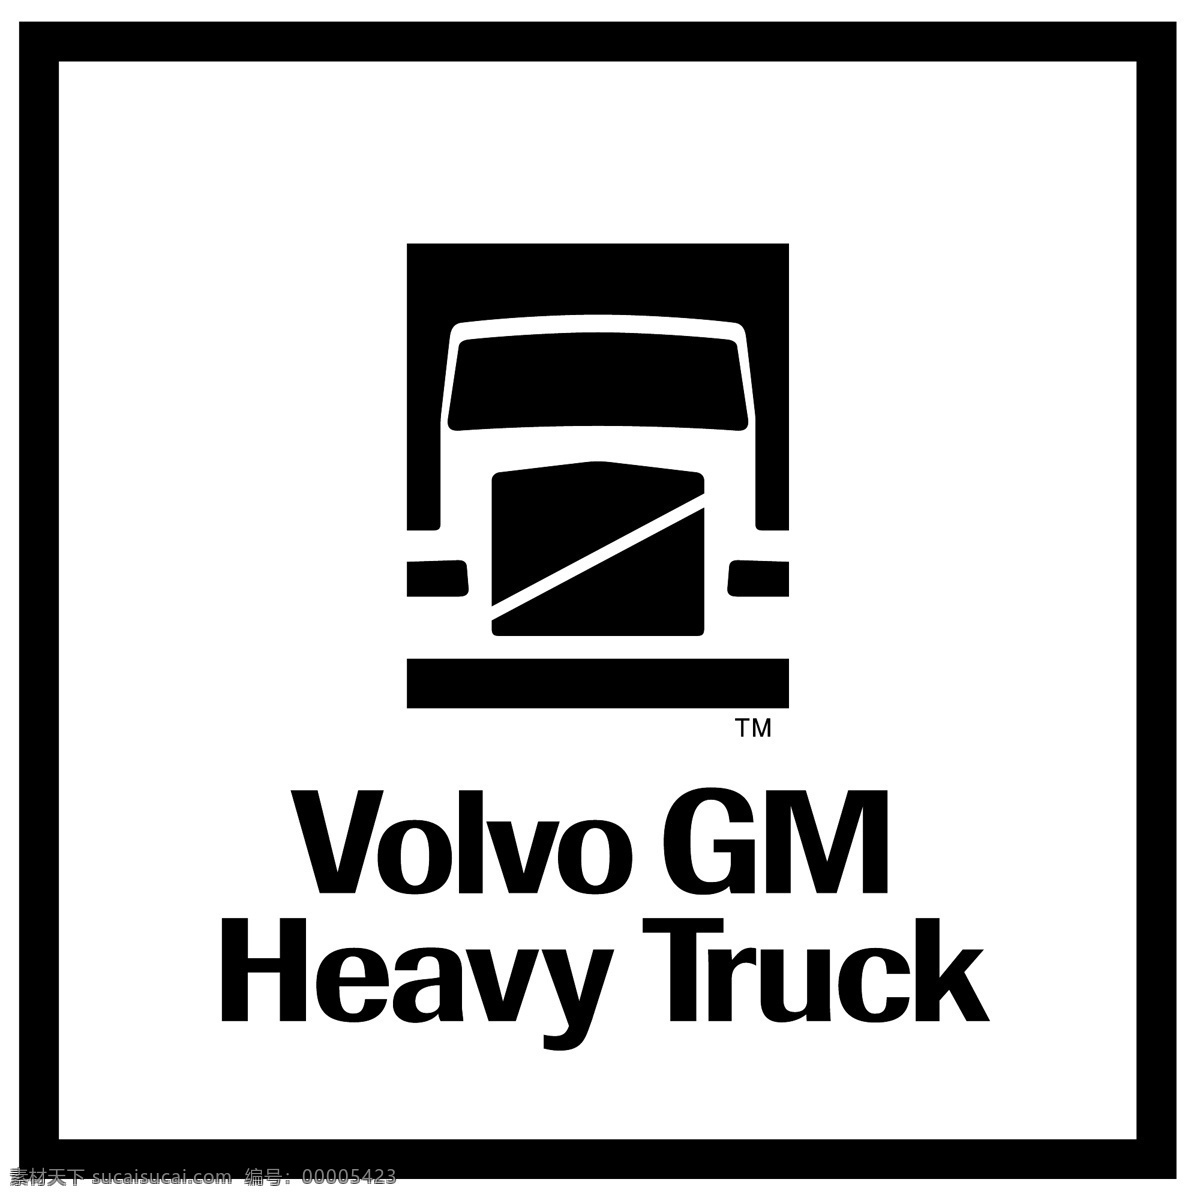 沃尔沃 汽车 重型 卡车 免费 通用 标志 载重 psd源文件 logo设计